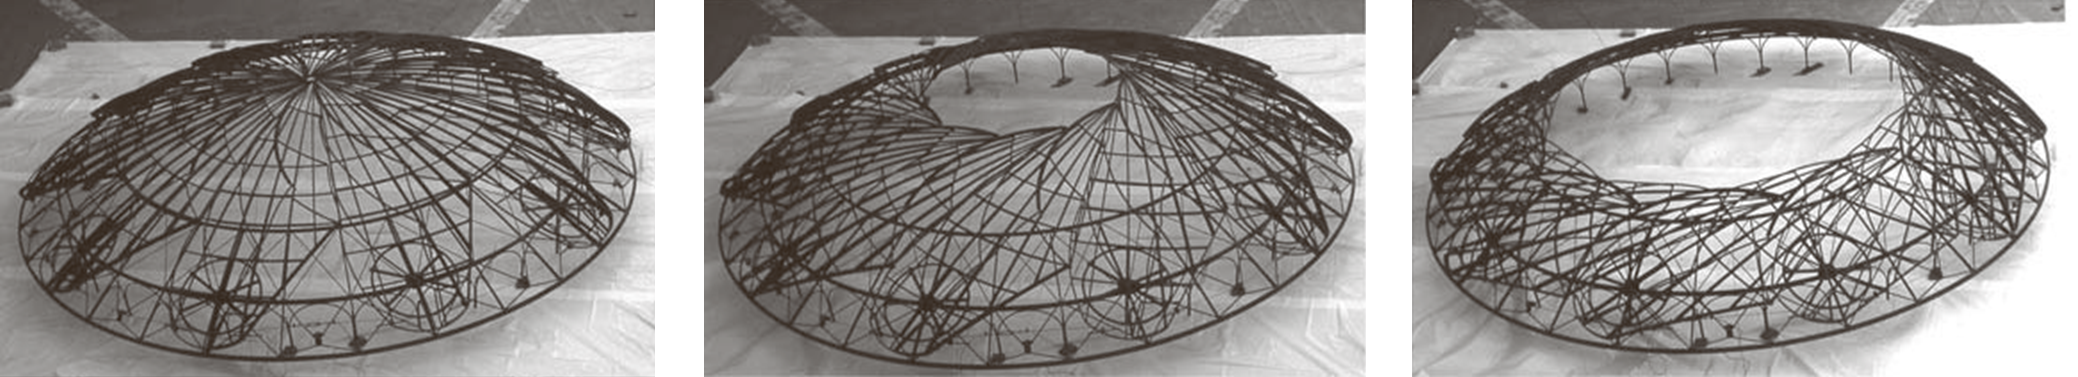 Proceso de desplegado de una cúpula reticular de directriz esférica desarrollada y construida por Emilio Pérez Piñero.